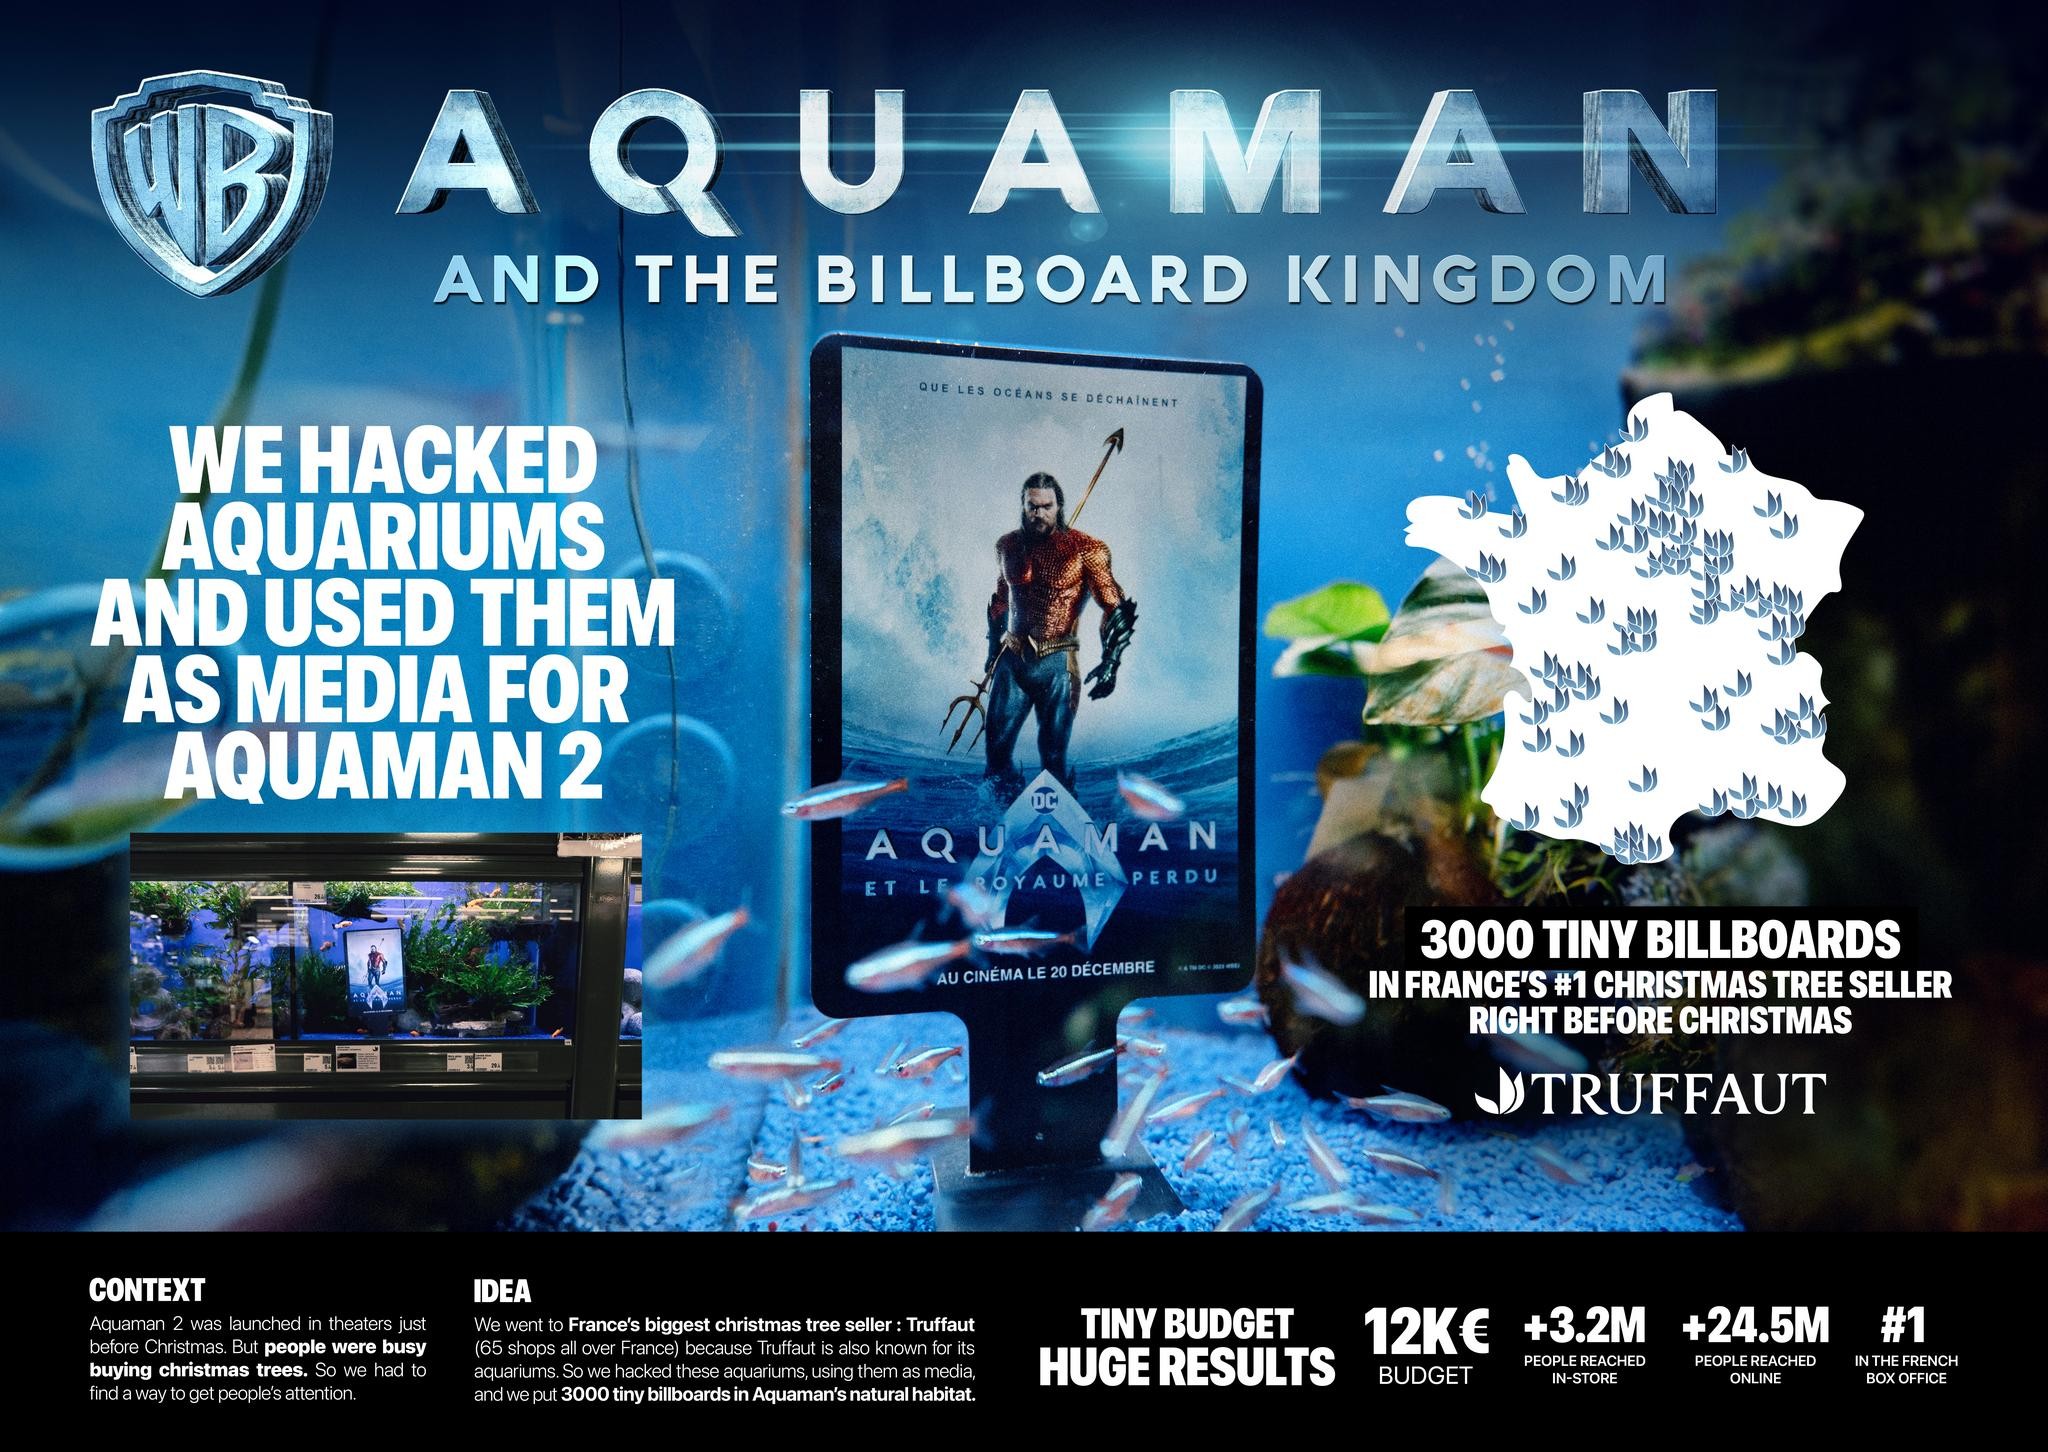 AQUAMAN and the Billboard Kingdom